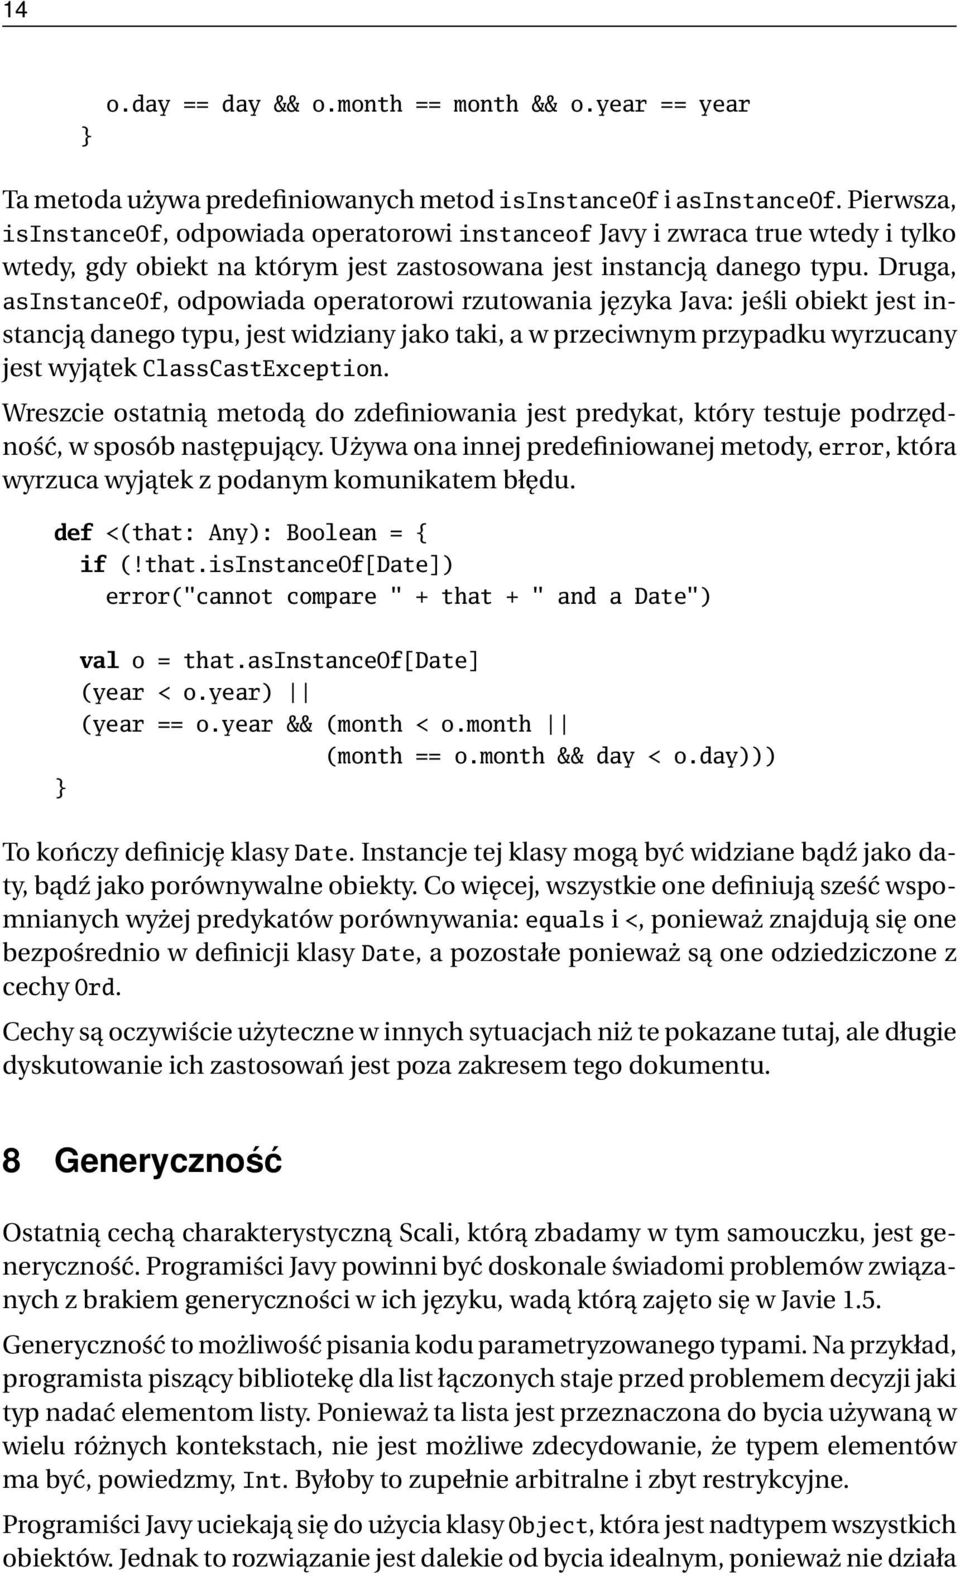 Druga, asinstanceof, odpowiada operatorowi rzutowania języka Java: jeśli obiekt jest instancją danego typu, jest widziany jako taki, a w przeciwnym przypadku wyrzucany jest wyjątek ClassCastException.